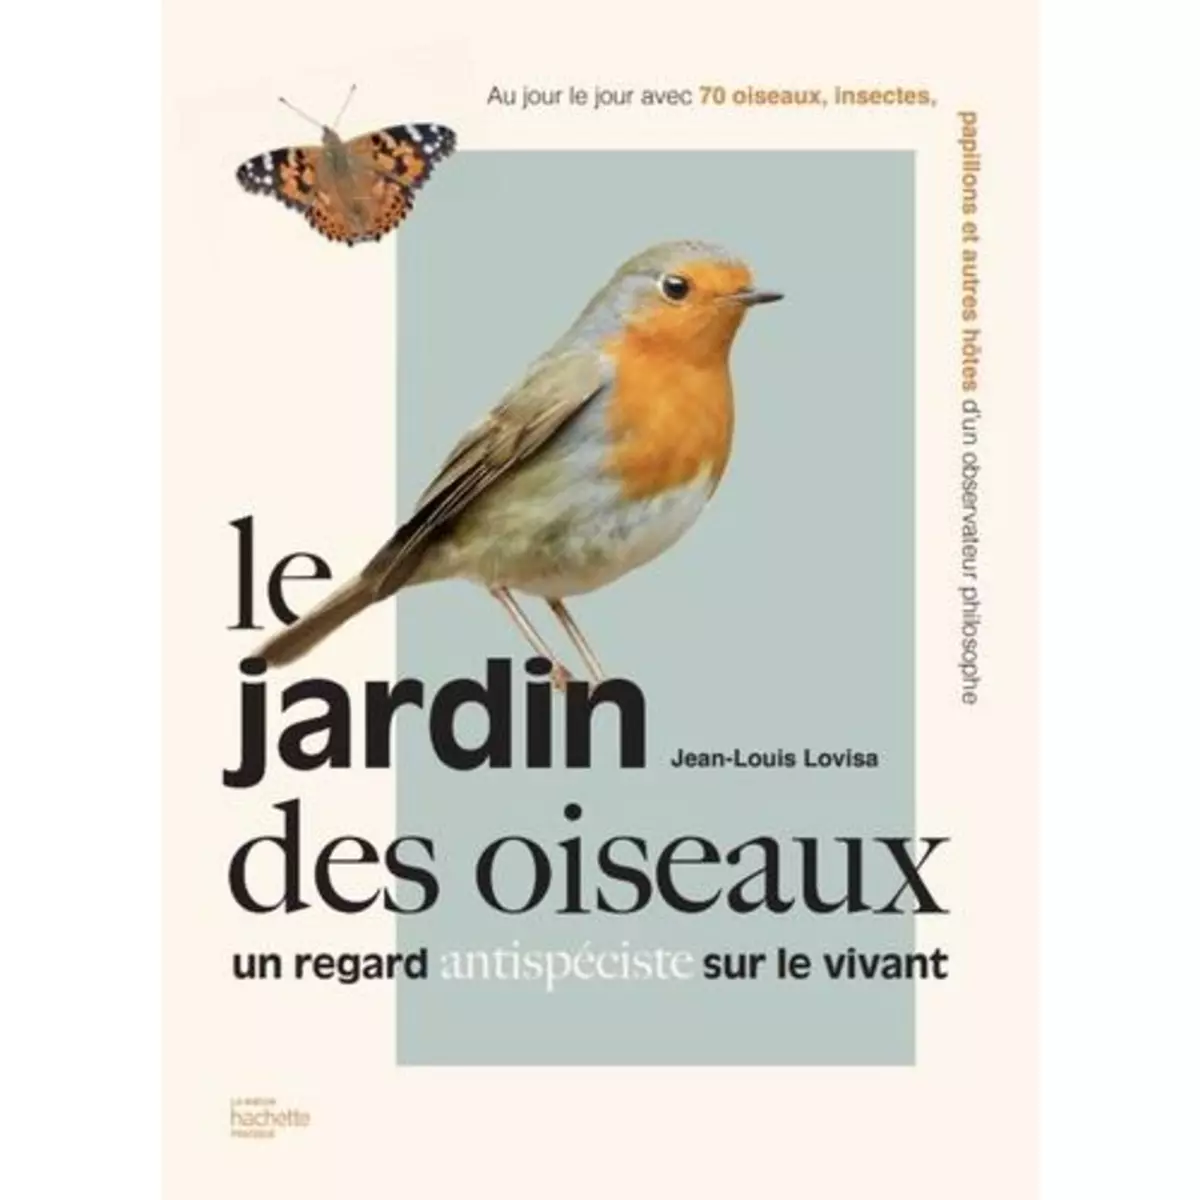  LE JARDIN DES OISEAUX. UN REGARD ANTISPECISTE SUR LE VIVANT, Lovisa Jean-Louis